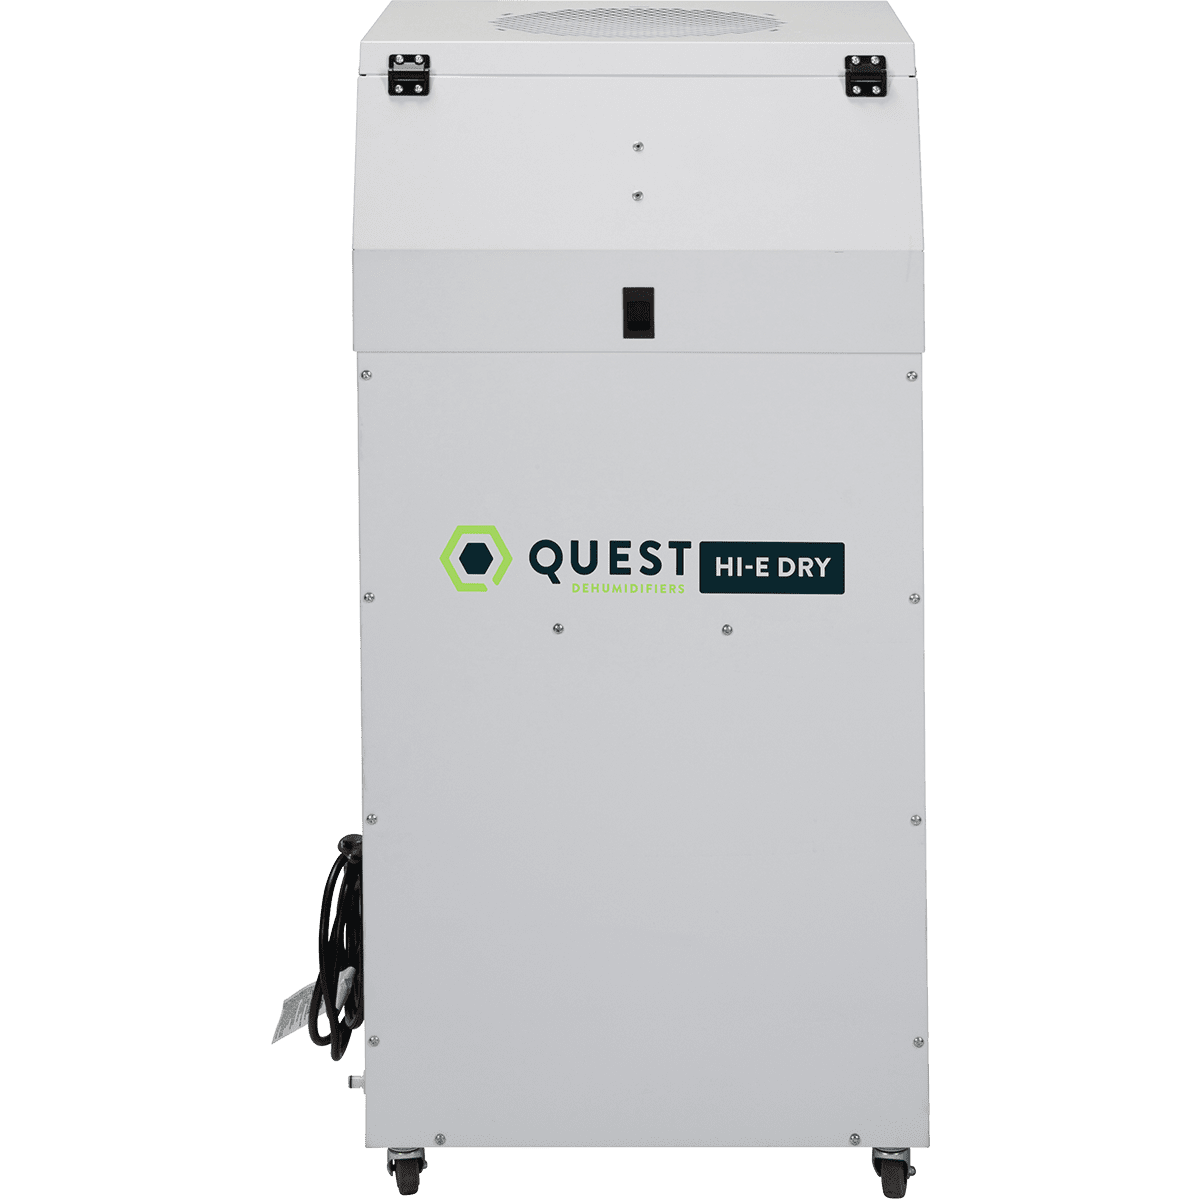 Quest Hi-E Dry 195 Dehumidifier - Primary View